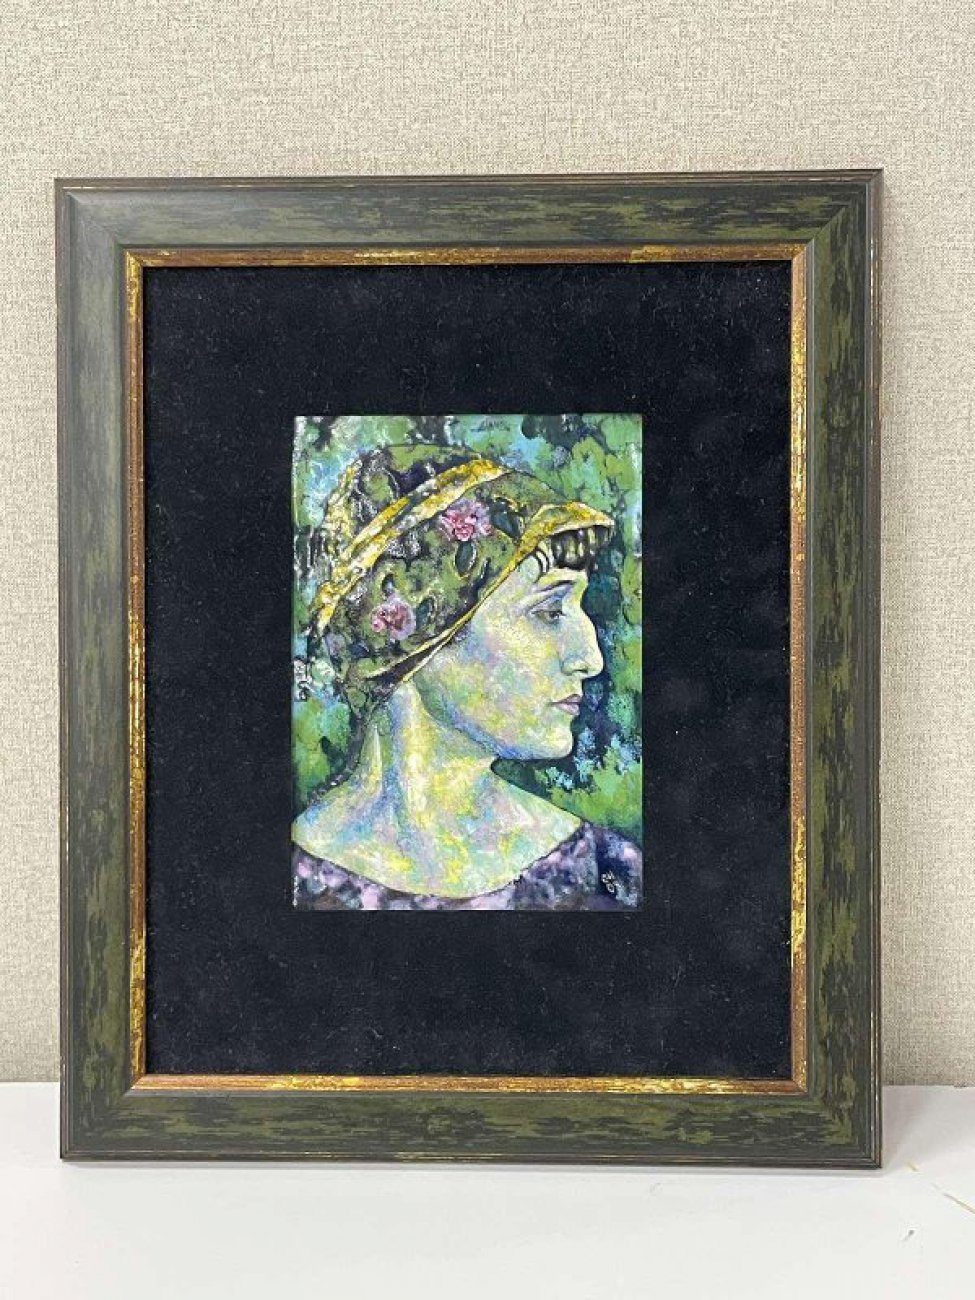 На фоне зелени изображен оплечный портрет Анны Ахматовой в профиль вправо. На голове шляпка. В правом нижнем углу авторская монограмма"СН 08".